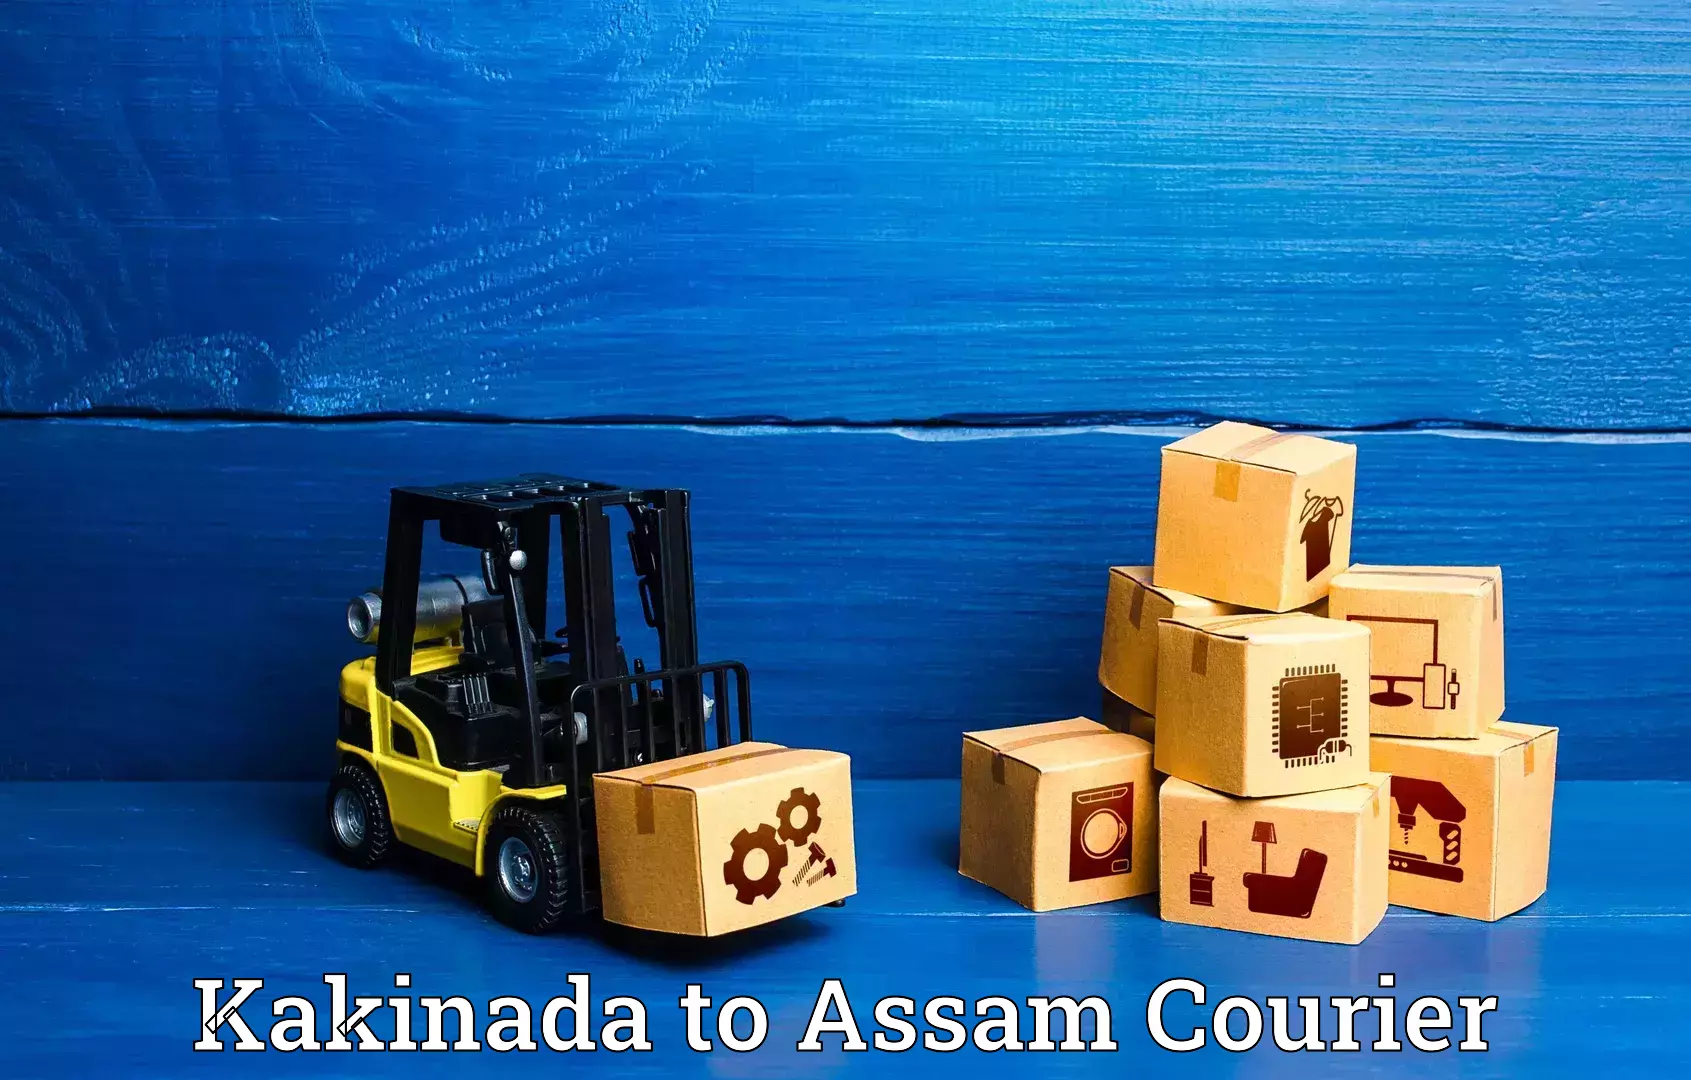 Customized luggage delivery Kakinada to Hojai Lanka